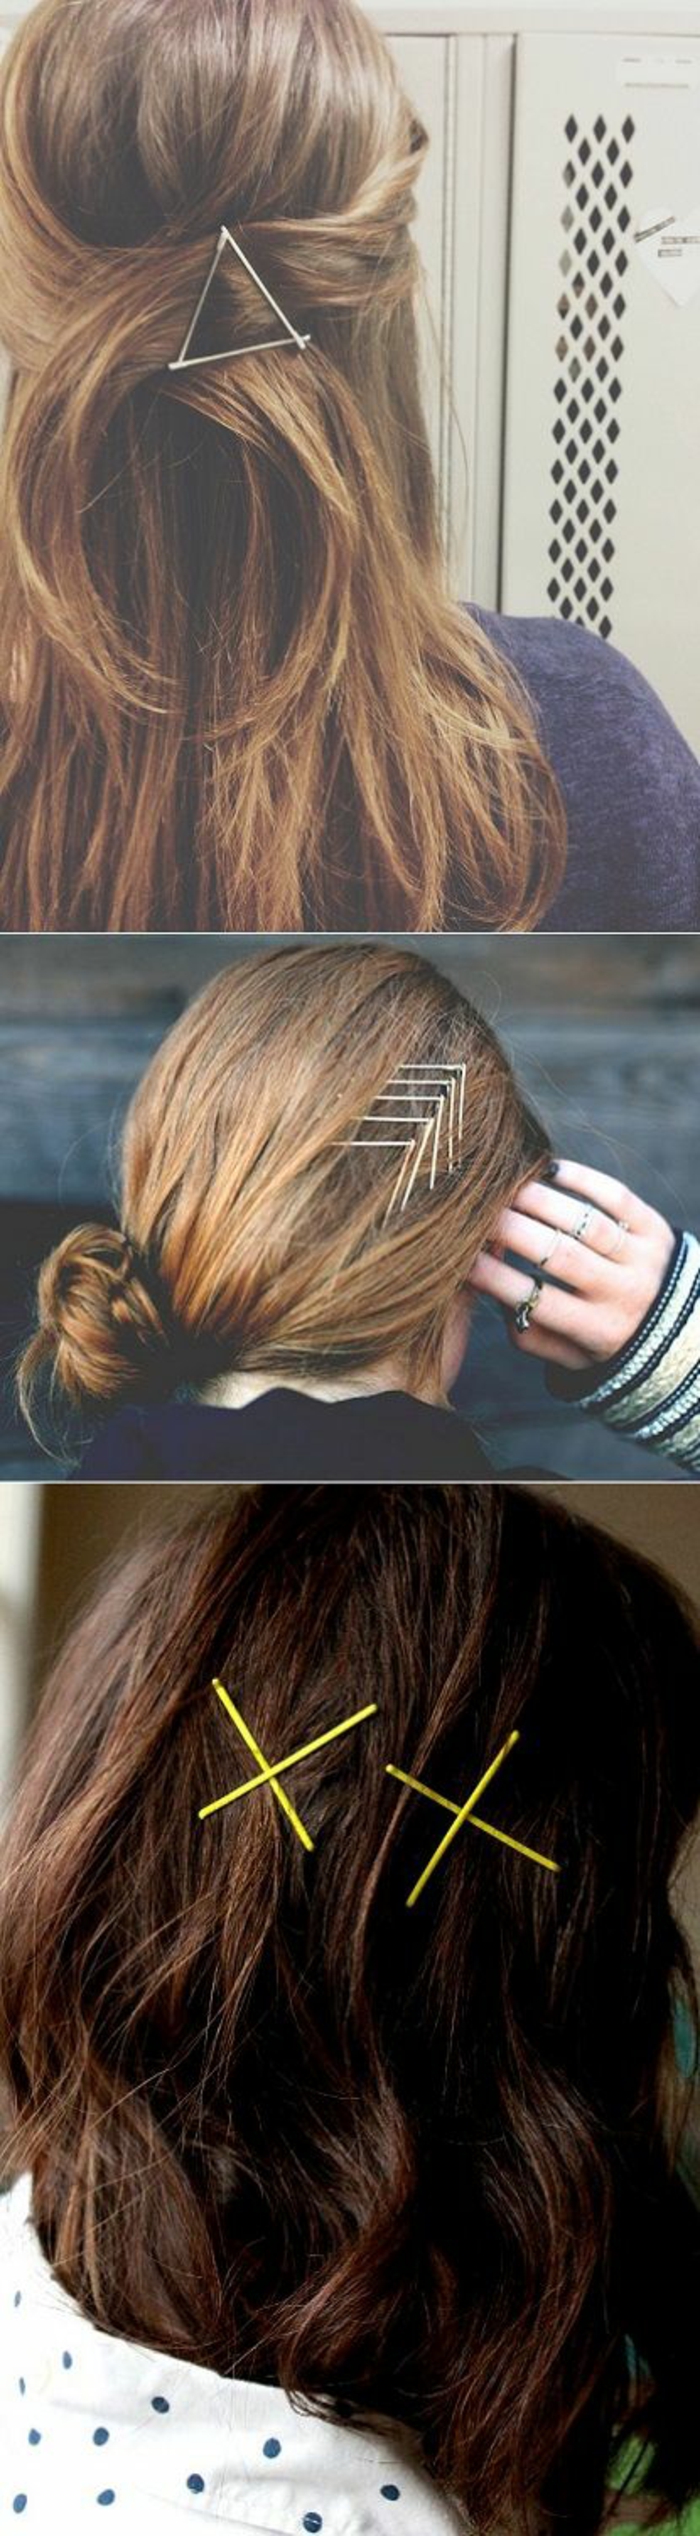 Superbe coiffures bohemes coiffure 2017 printemps avec bobby pins 